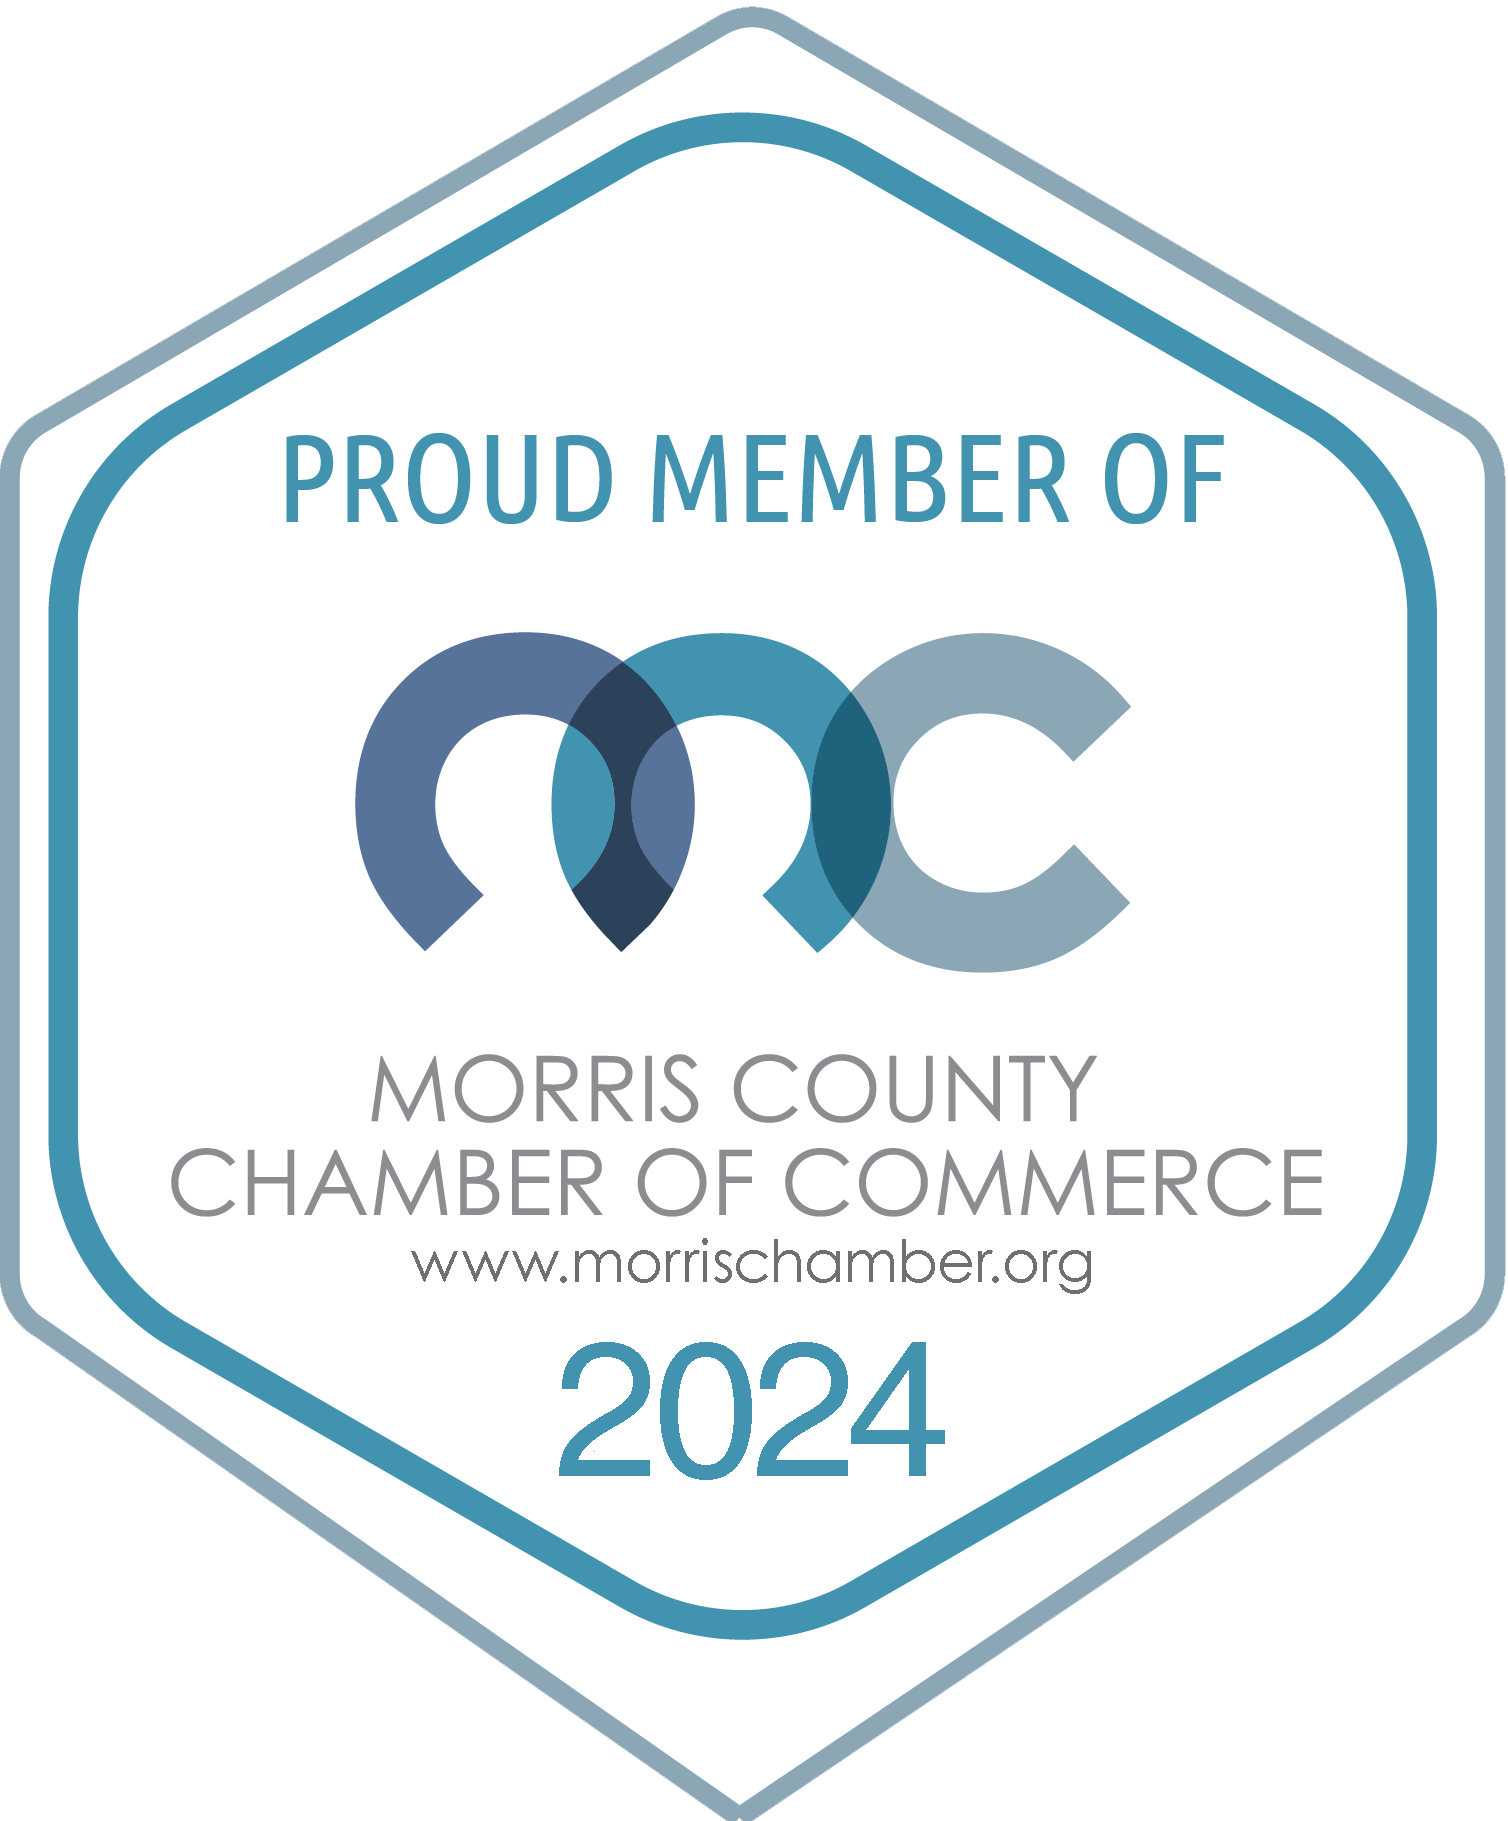 Proud Member of Morris County Chamber of Commerce www.morrischamber.org 2024